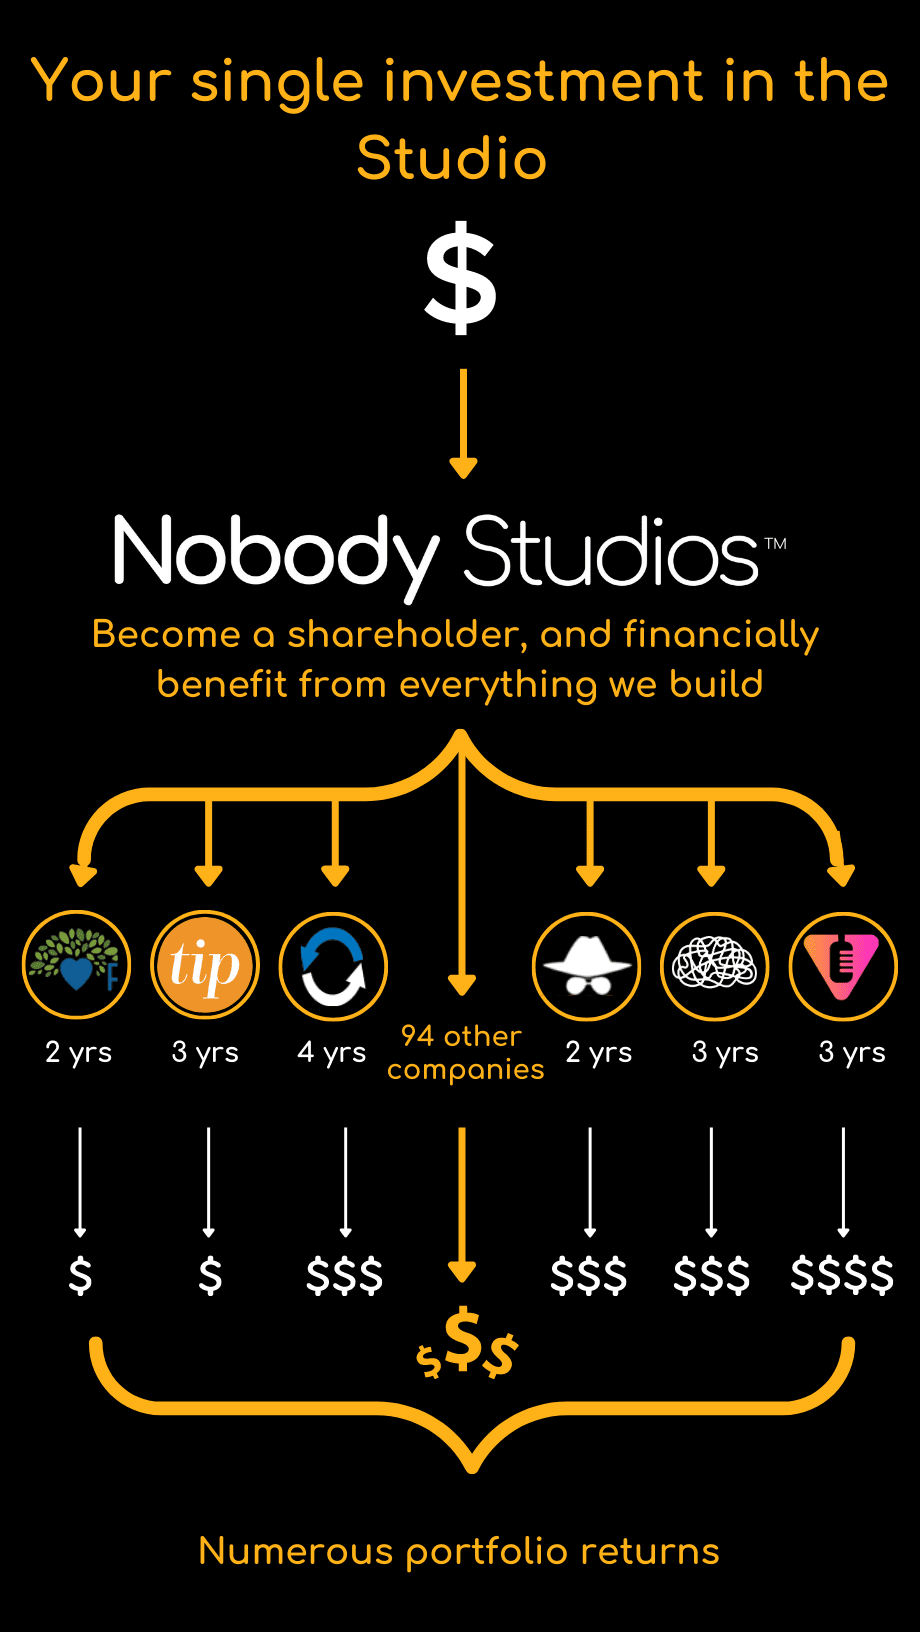 Nobody Studios